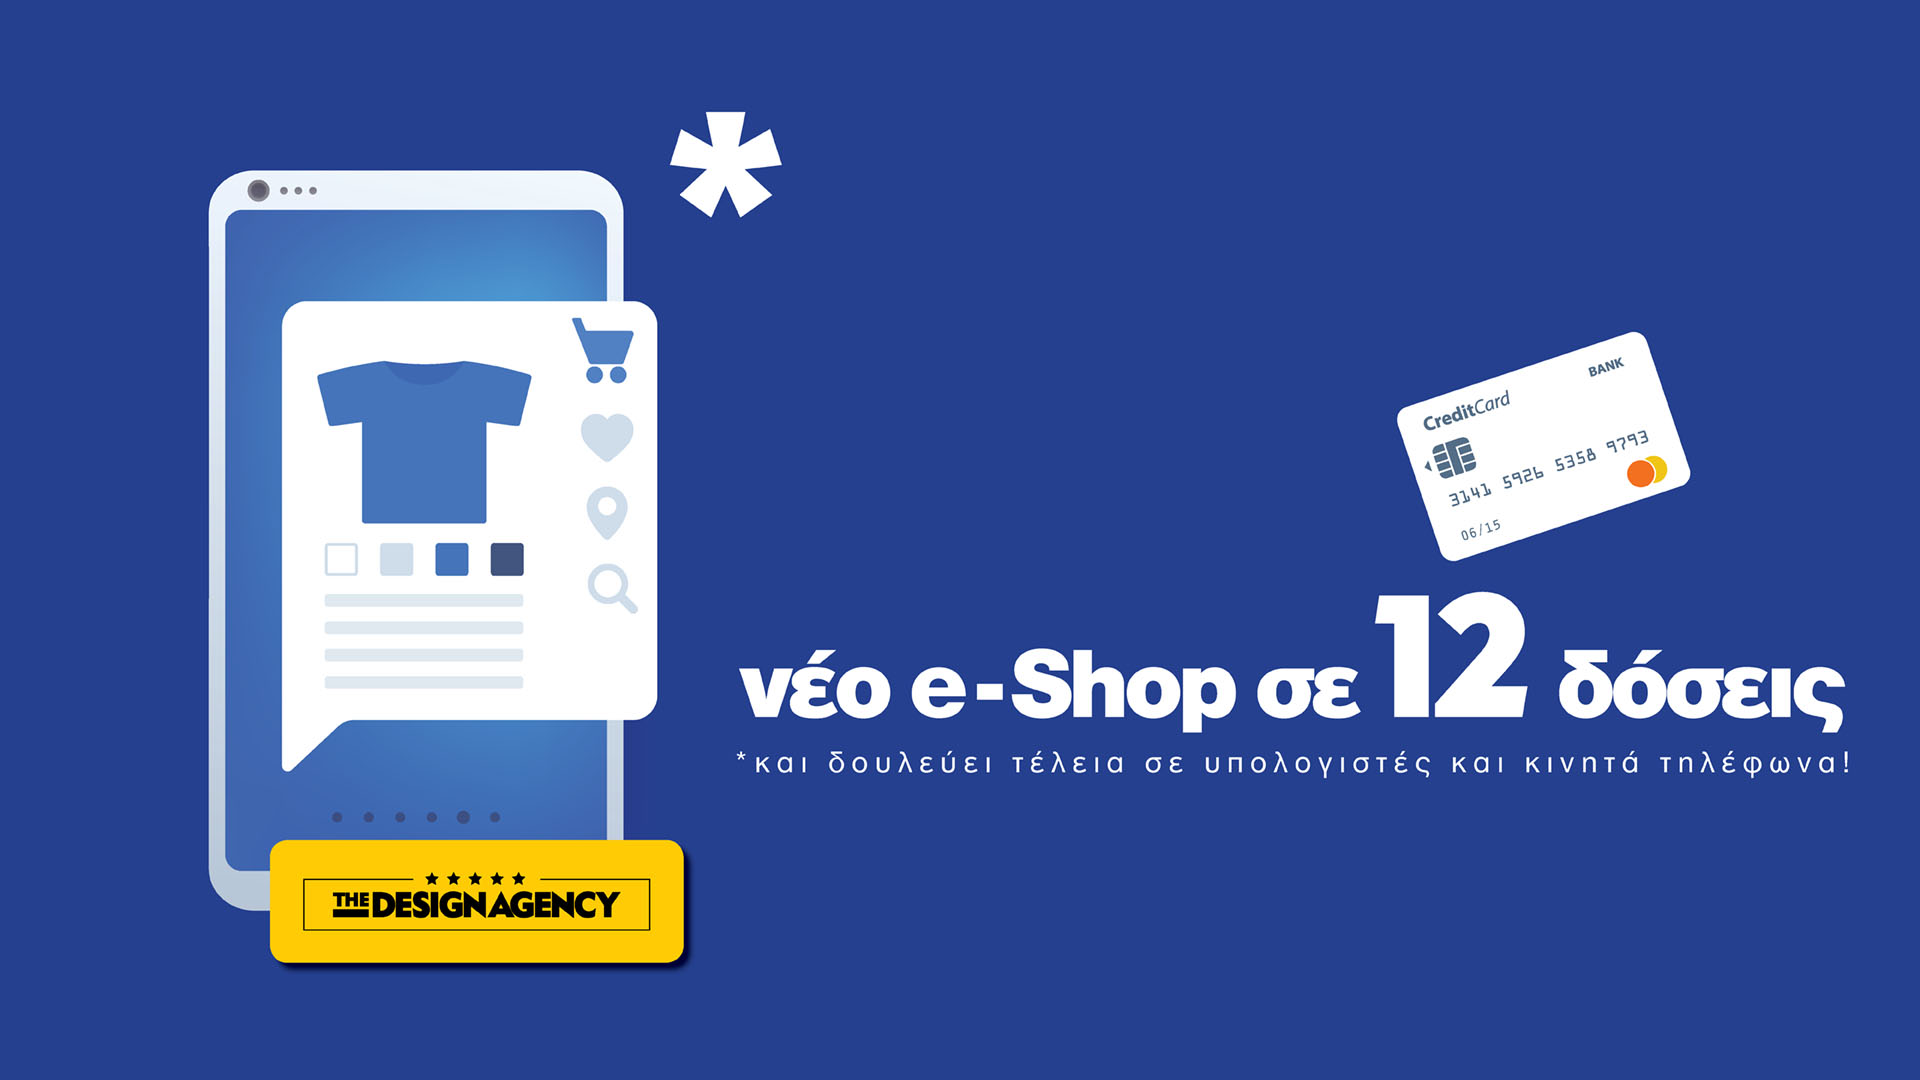 Αποκτήστε Νέο e-shop / e-commerce με 12 δόσεις